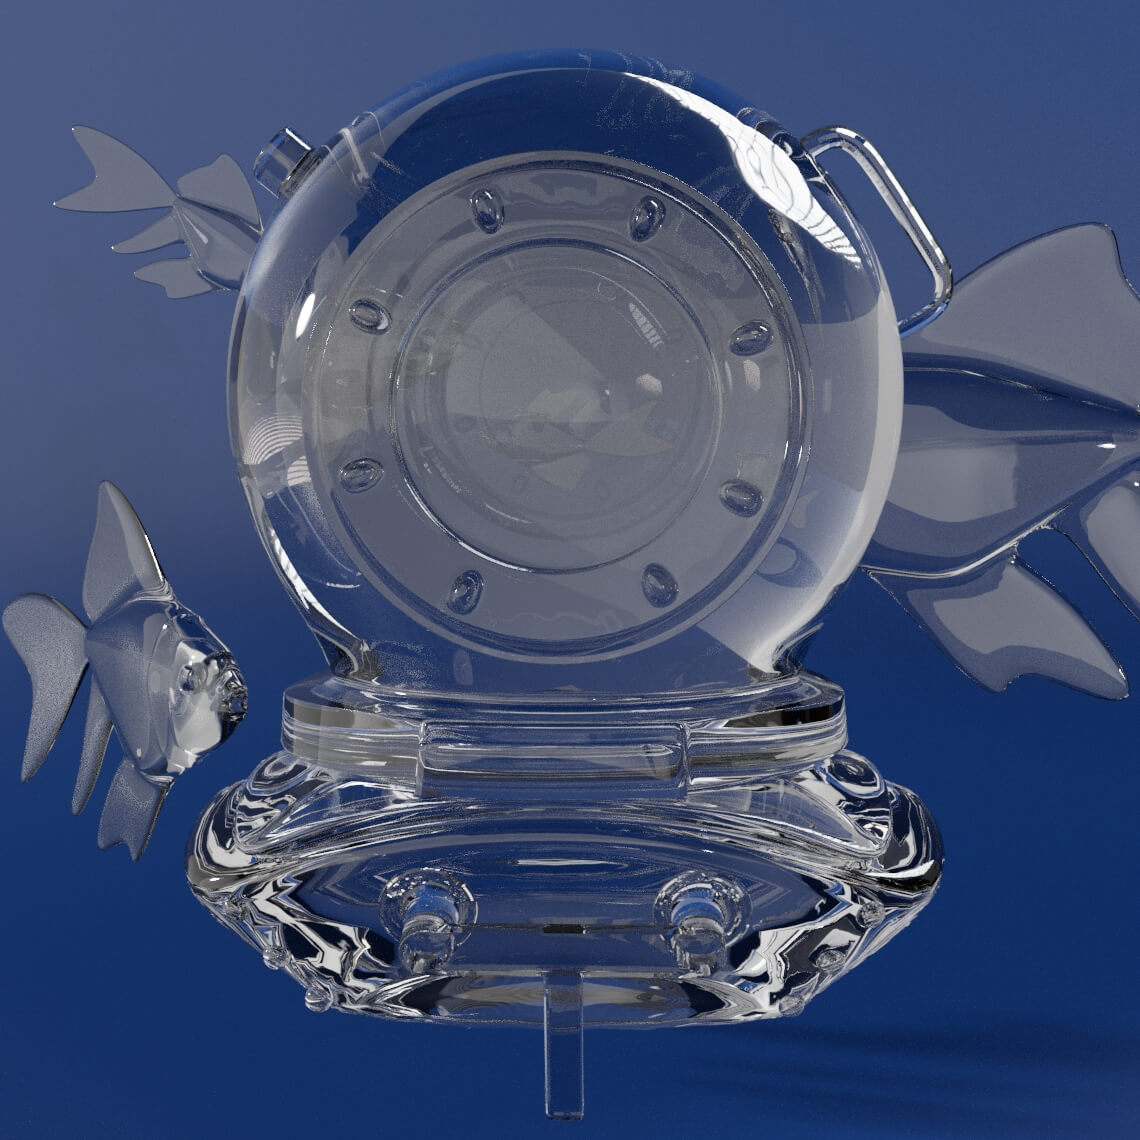 Capacete de mergulhador em 3D, com o acabamento de material transparente que representa vidro.